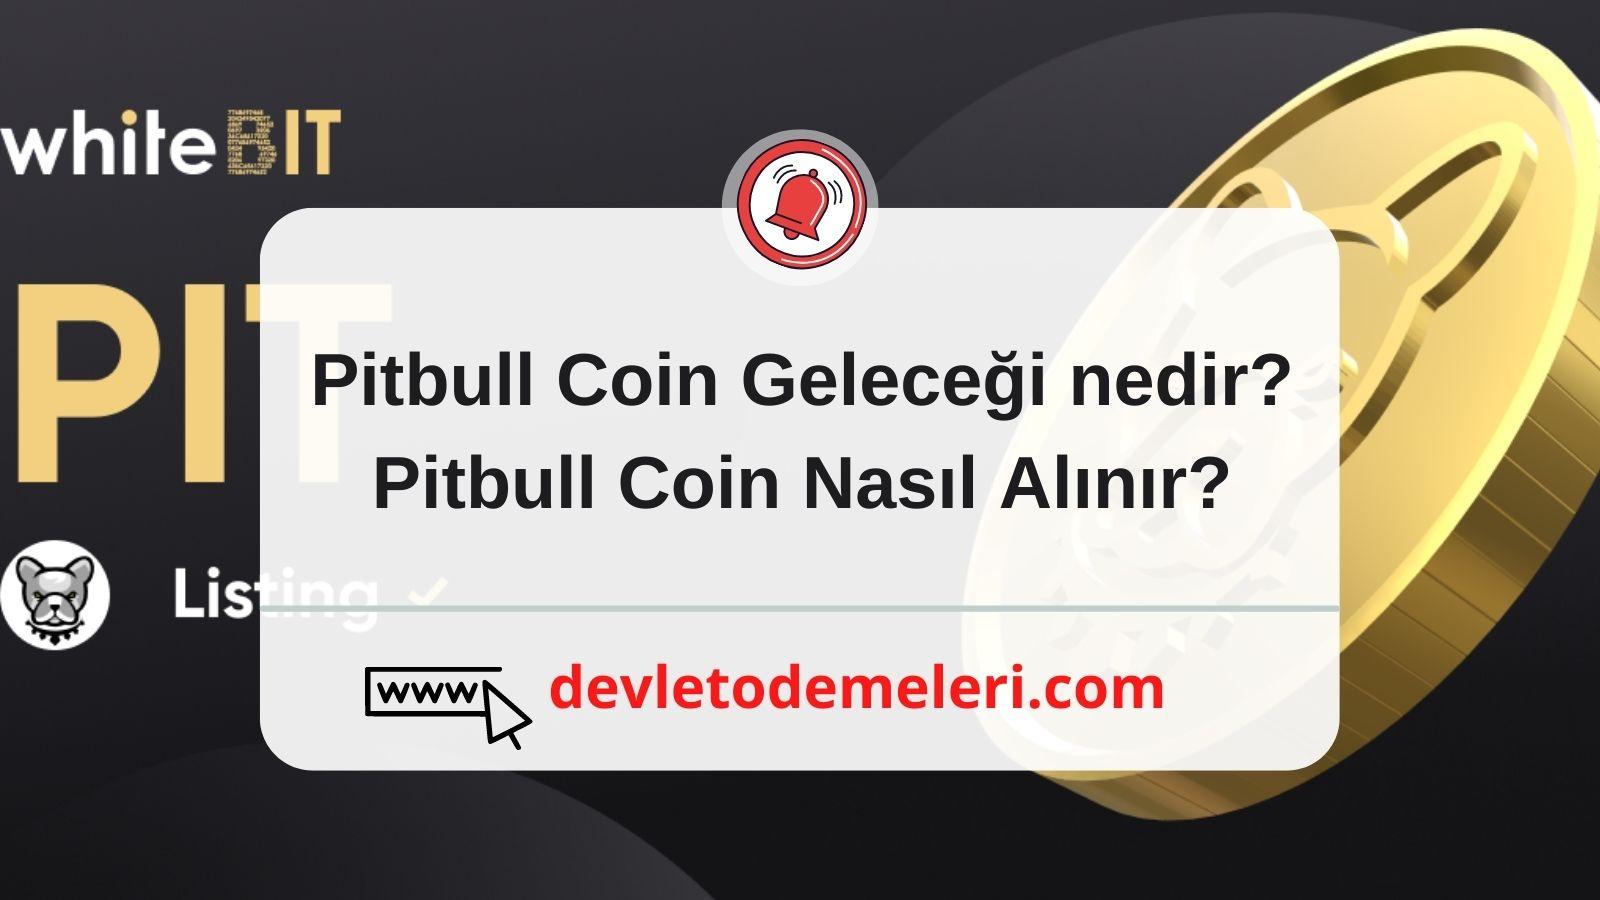 Pitbull Coin Geleceği nedir?